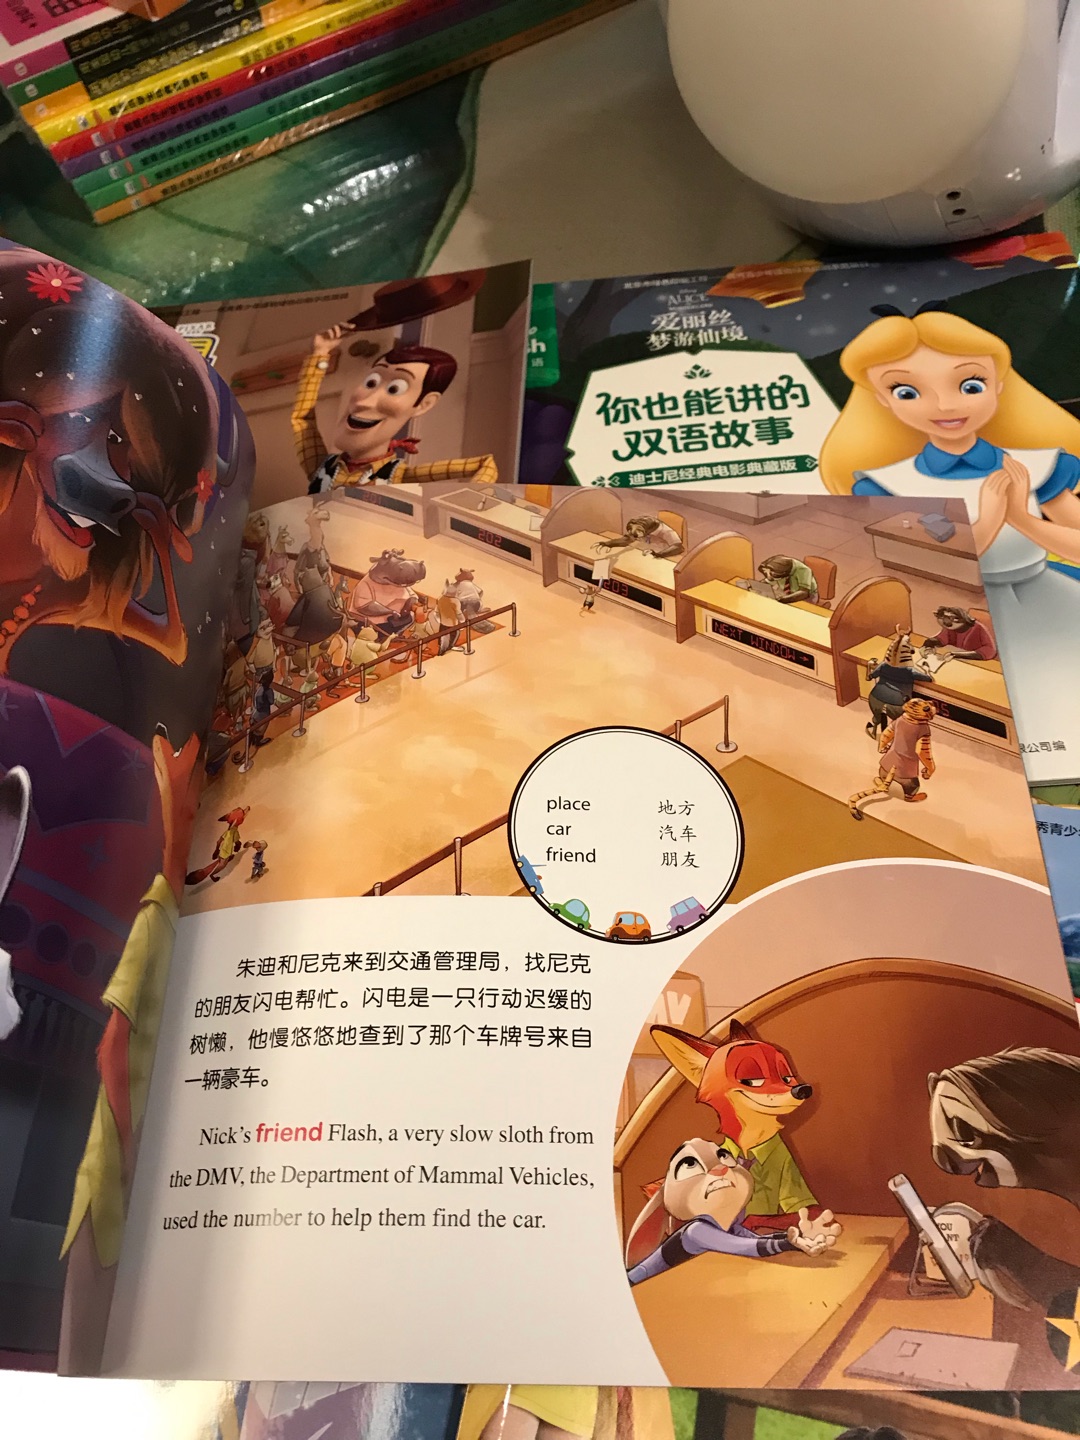 质量很好，印刷很漂亮，迪士尼经典故事都有了，双语文字比较简单，送货快，服务好！